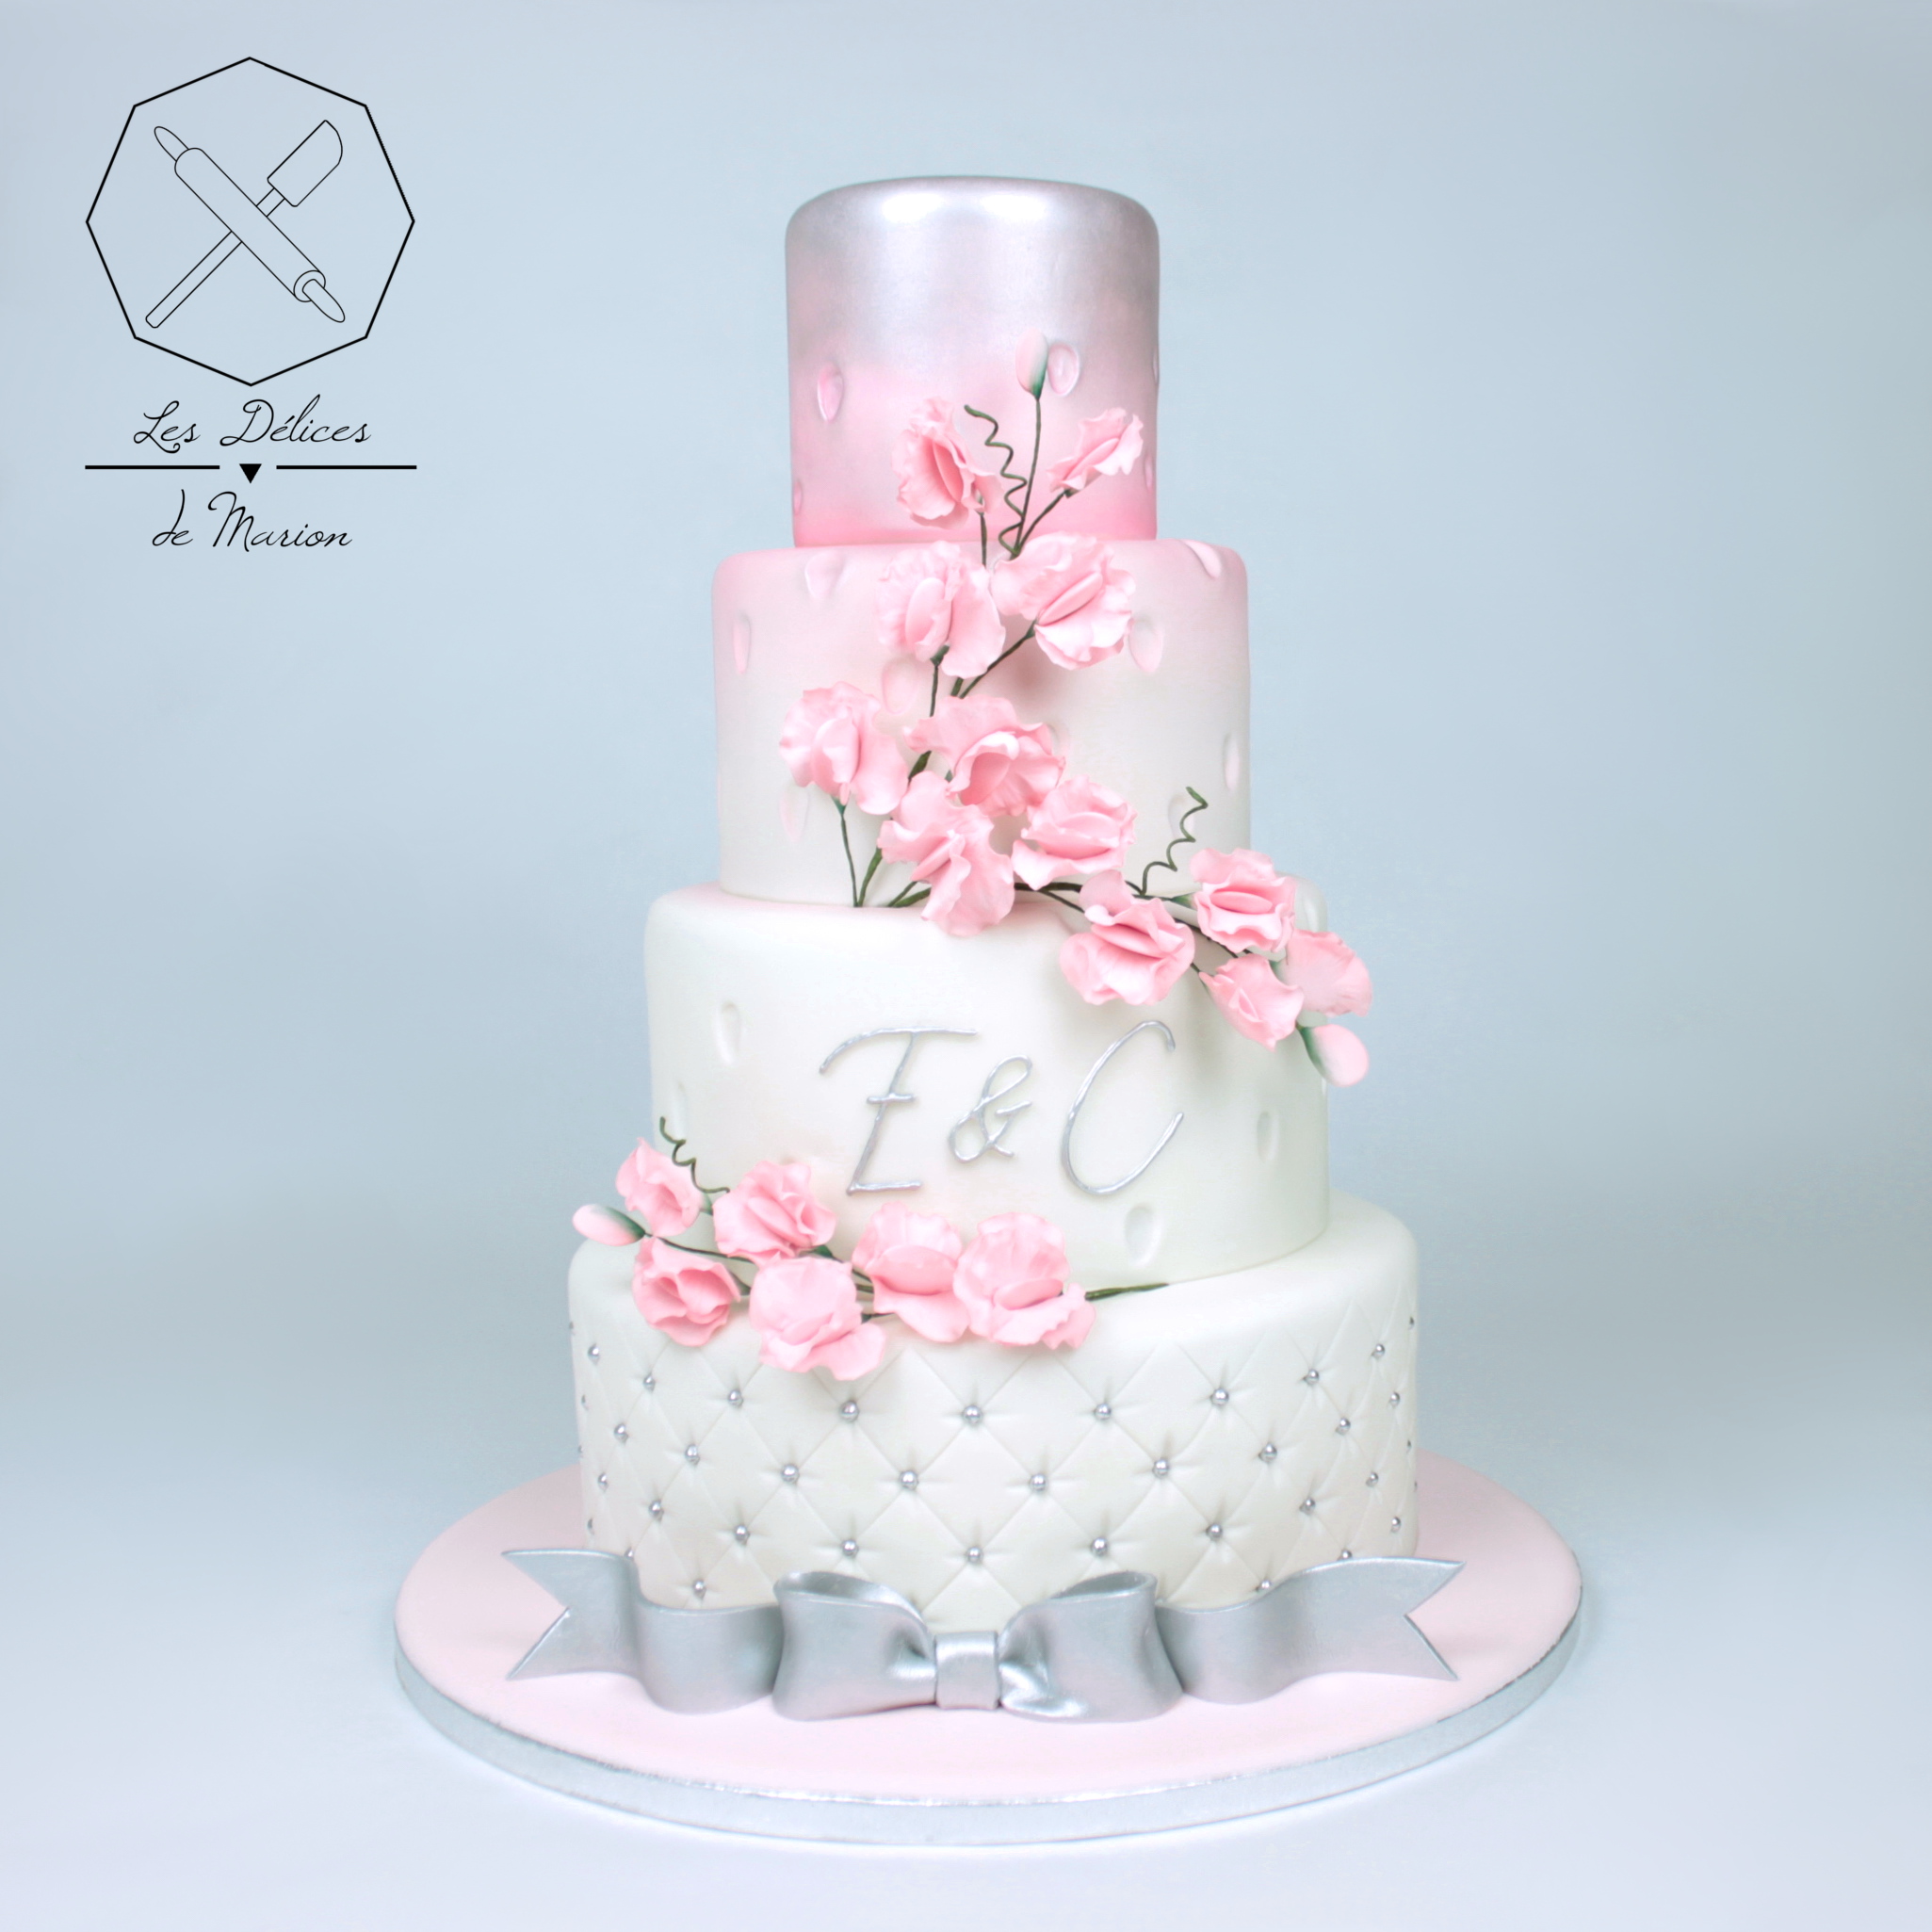 gateau_mariage_wedding_cake_pois-de-senteur_sweet-pea_fleurs_rose_argent_cake-design_delices-marion